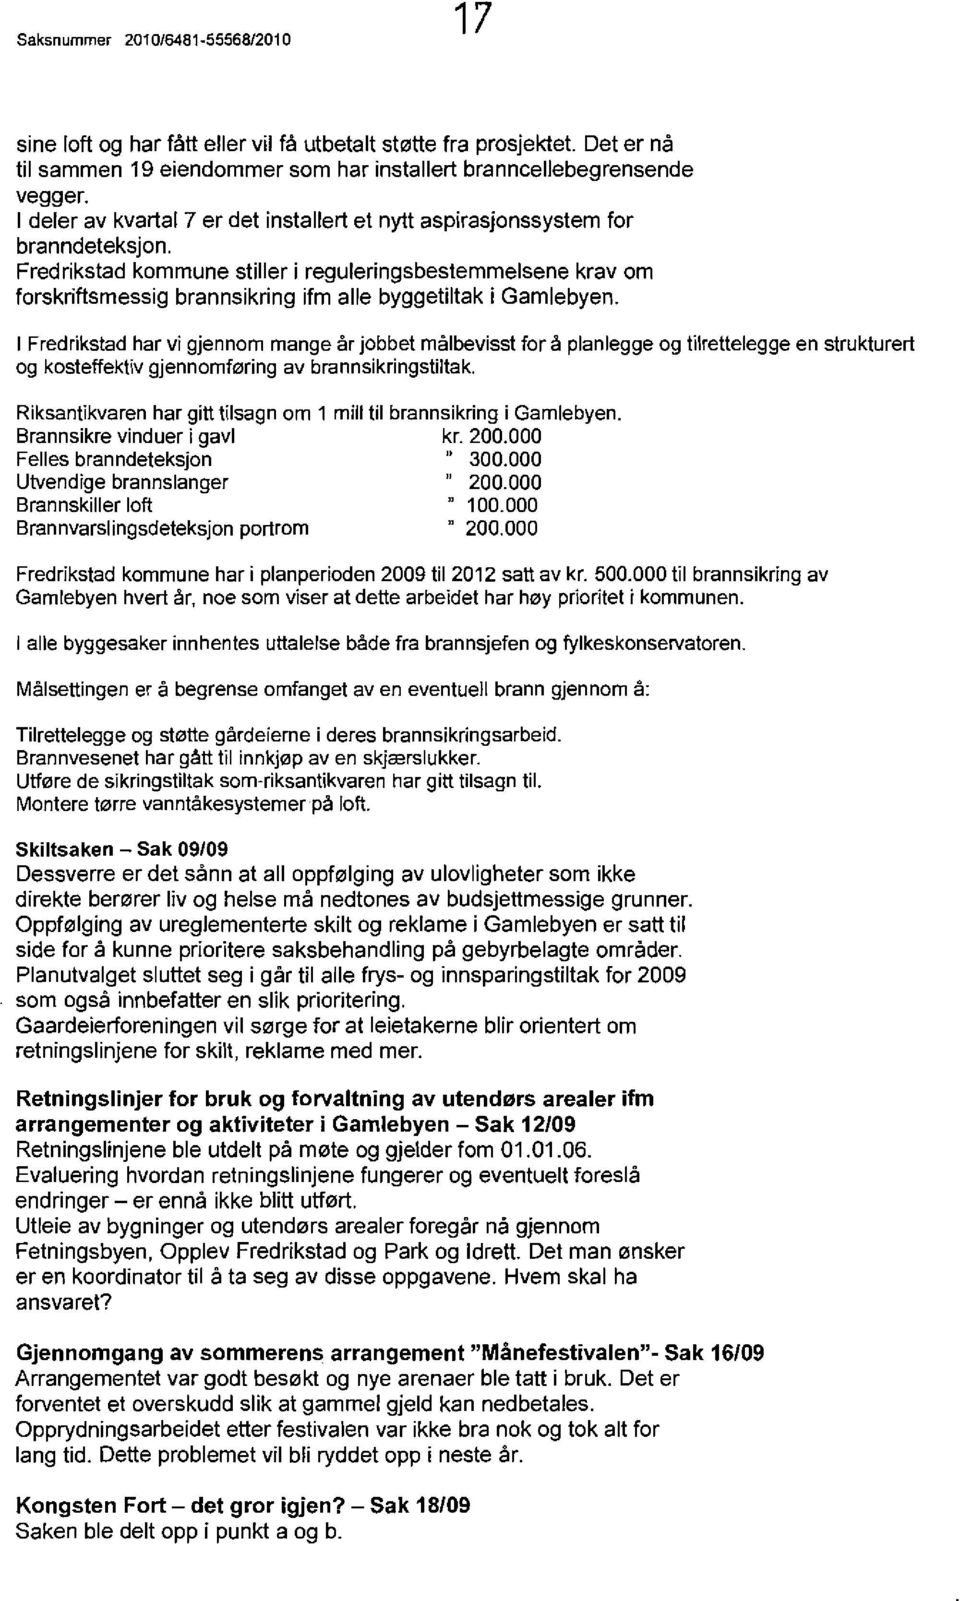 Fredrikstad kommune stiller i reguleringsbestemmelsene krav om forskriftsmessig brannsikring ifm aile byggetiltak i Gamlebyen.